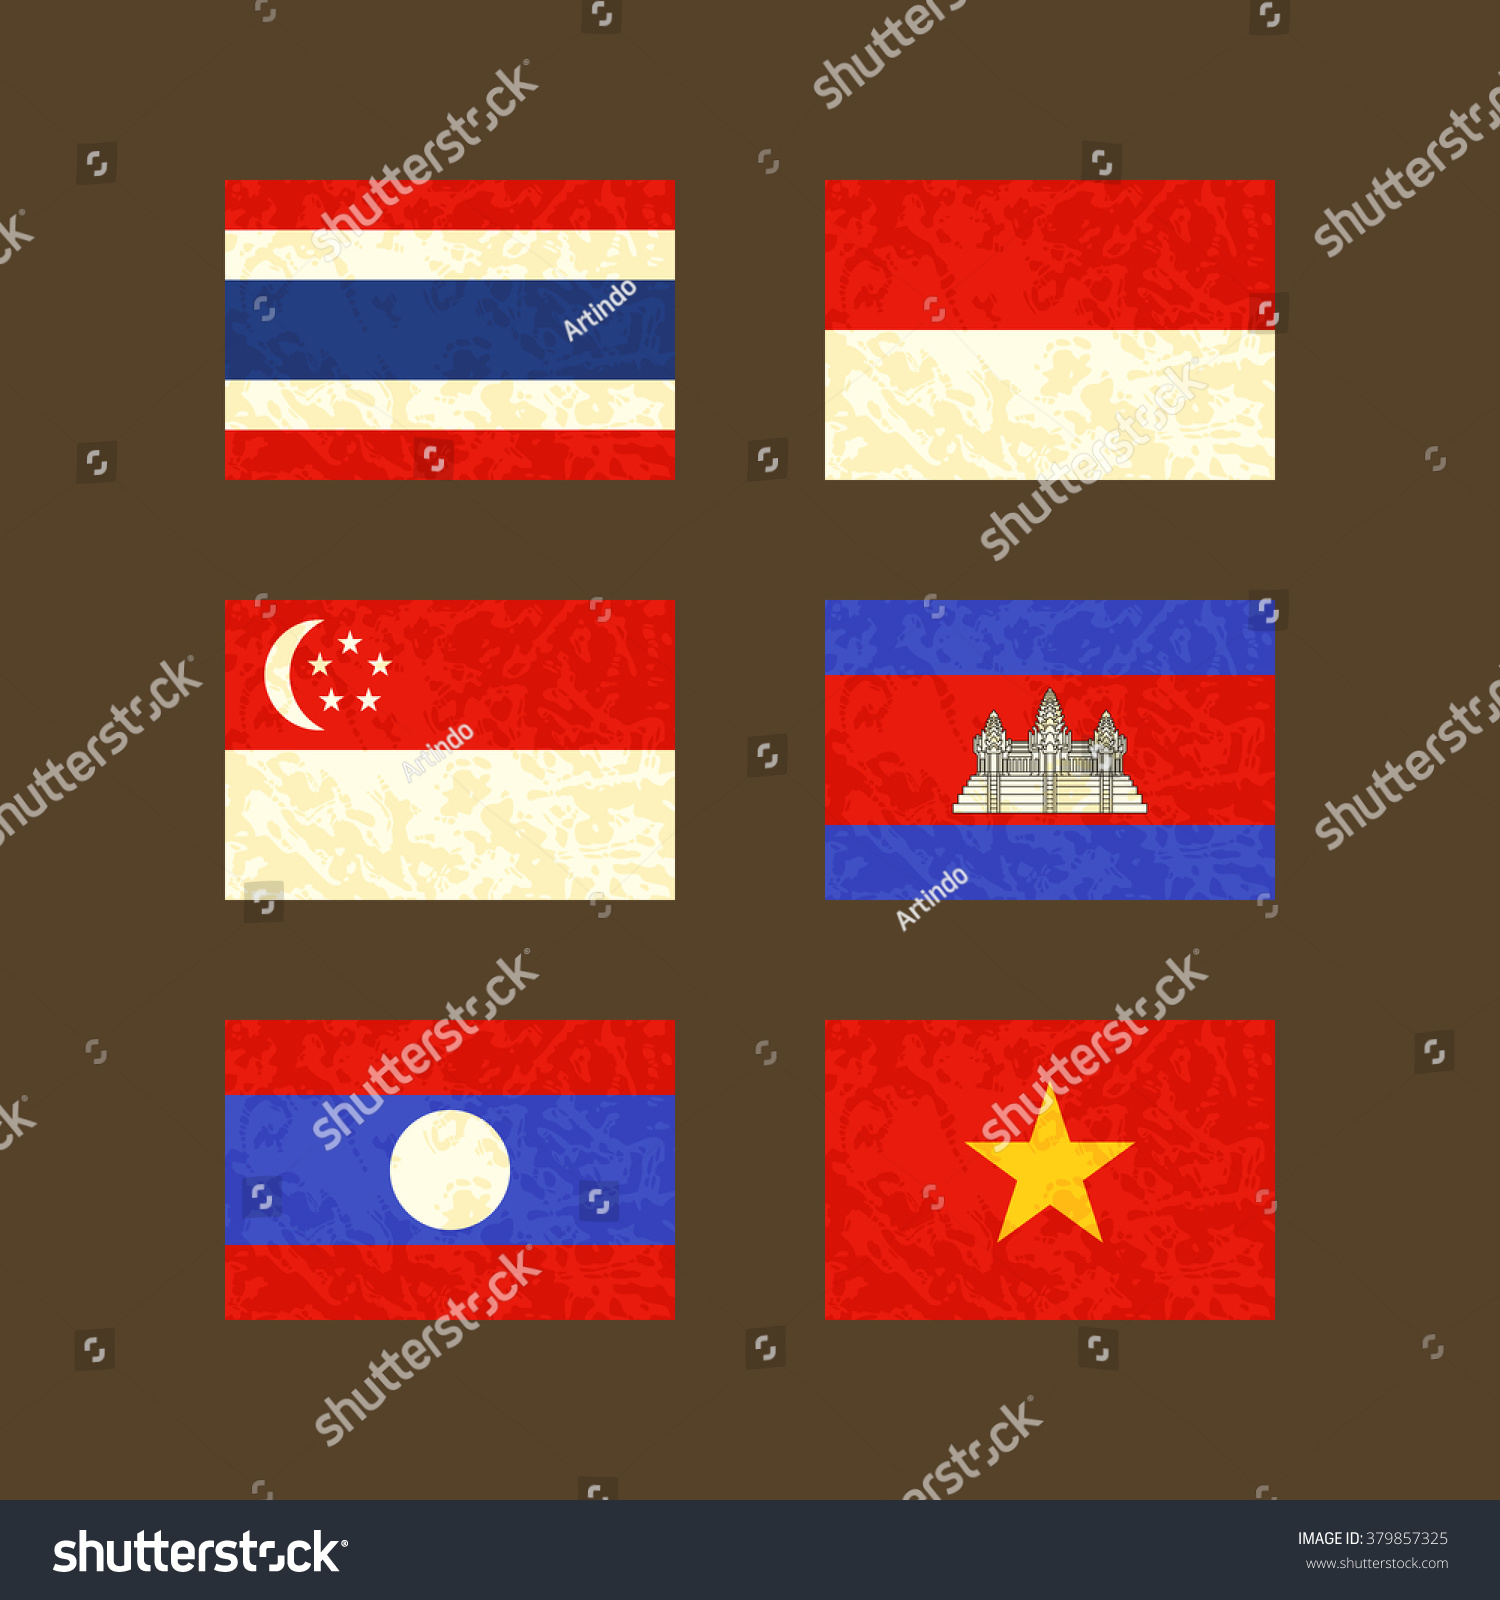 Flags Thailand Indonesia Singapore Cambodia Laos Stock Vector ...